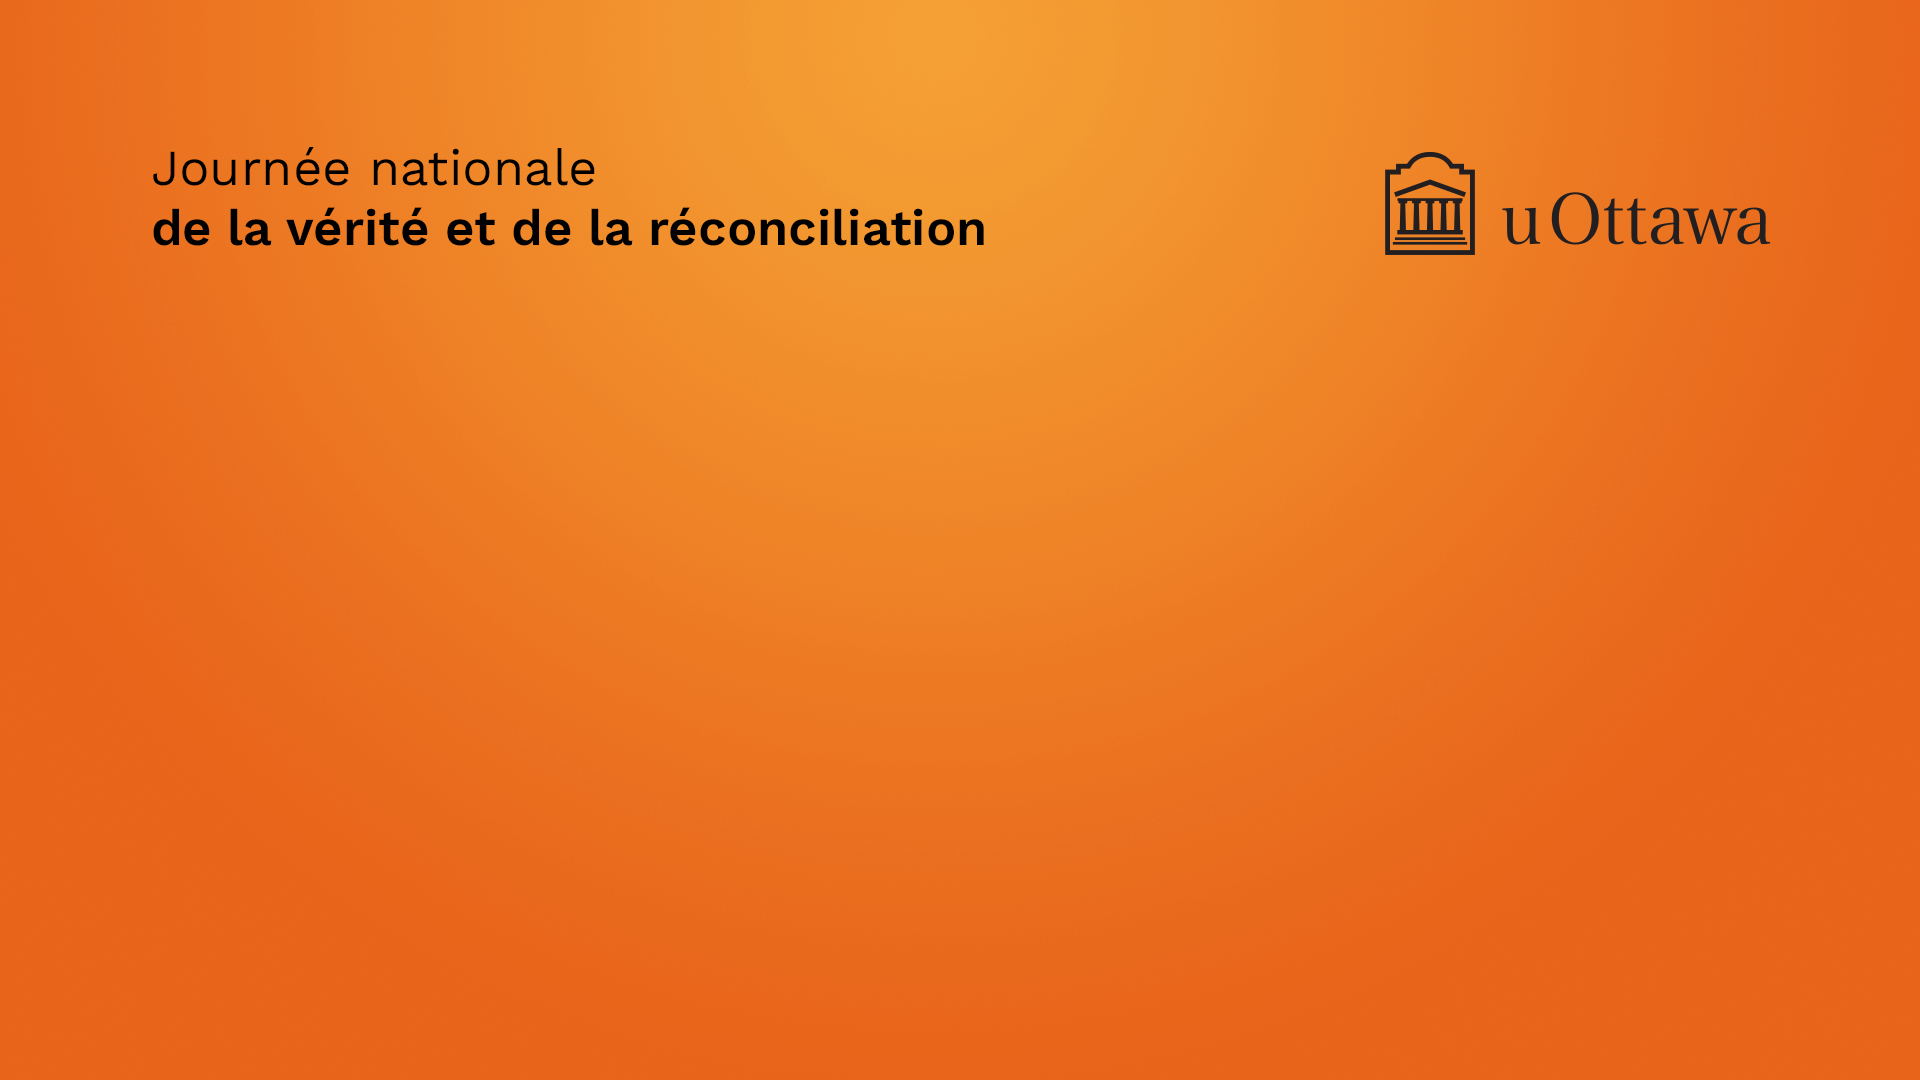 Image de fond orange avec le logo de l'Université d'Ottawa et le texte suivant : Journée nationale de la vérité et de la réconciliation